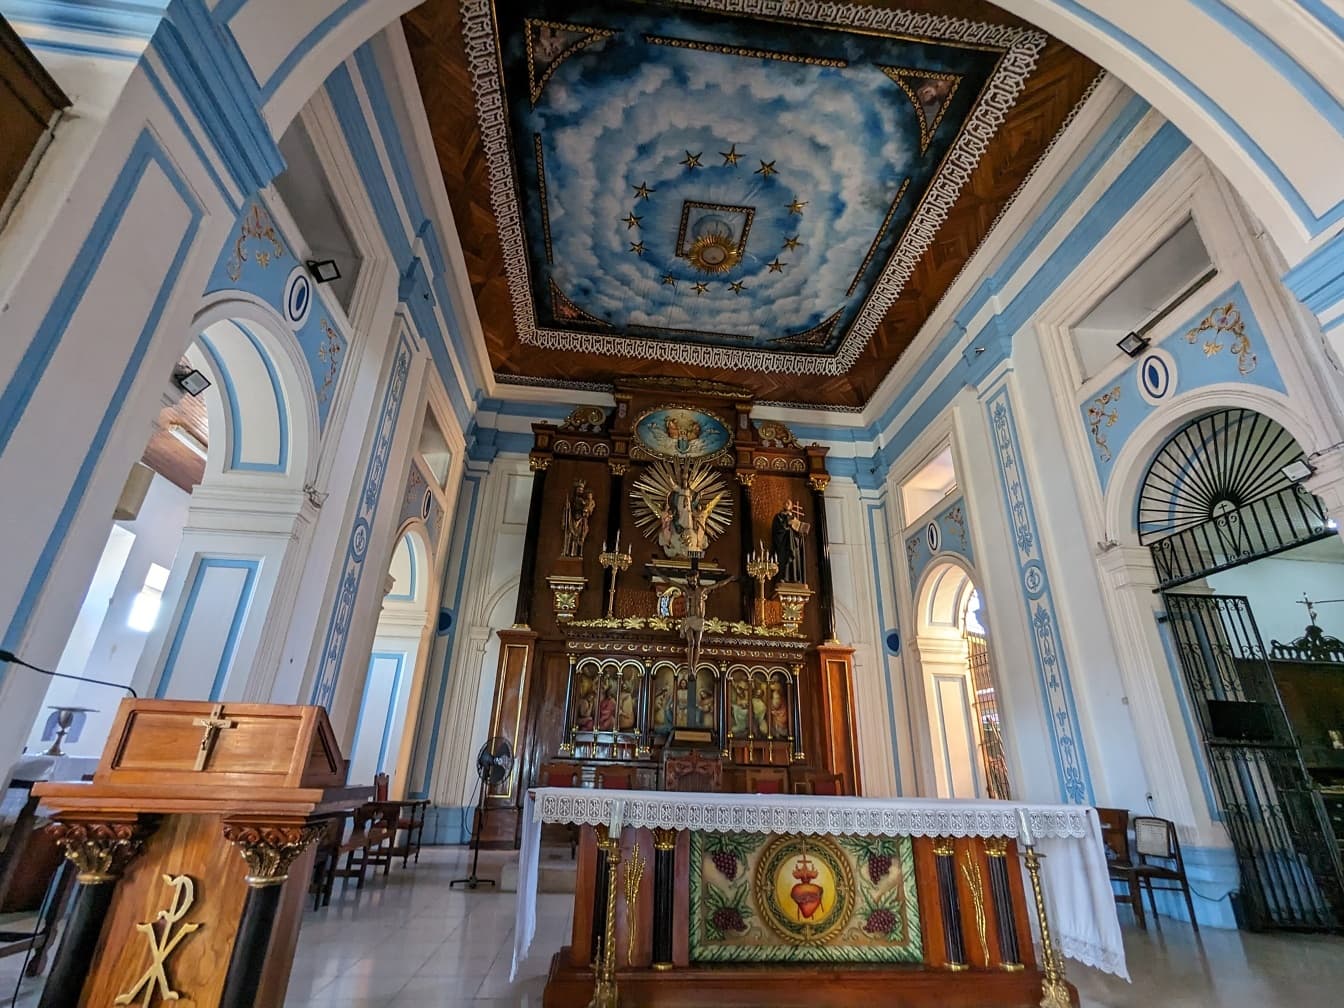 Interiør af Xalteva kirken i Granada i Nicaragua med vægmaleri på loftet